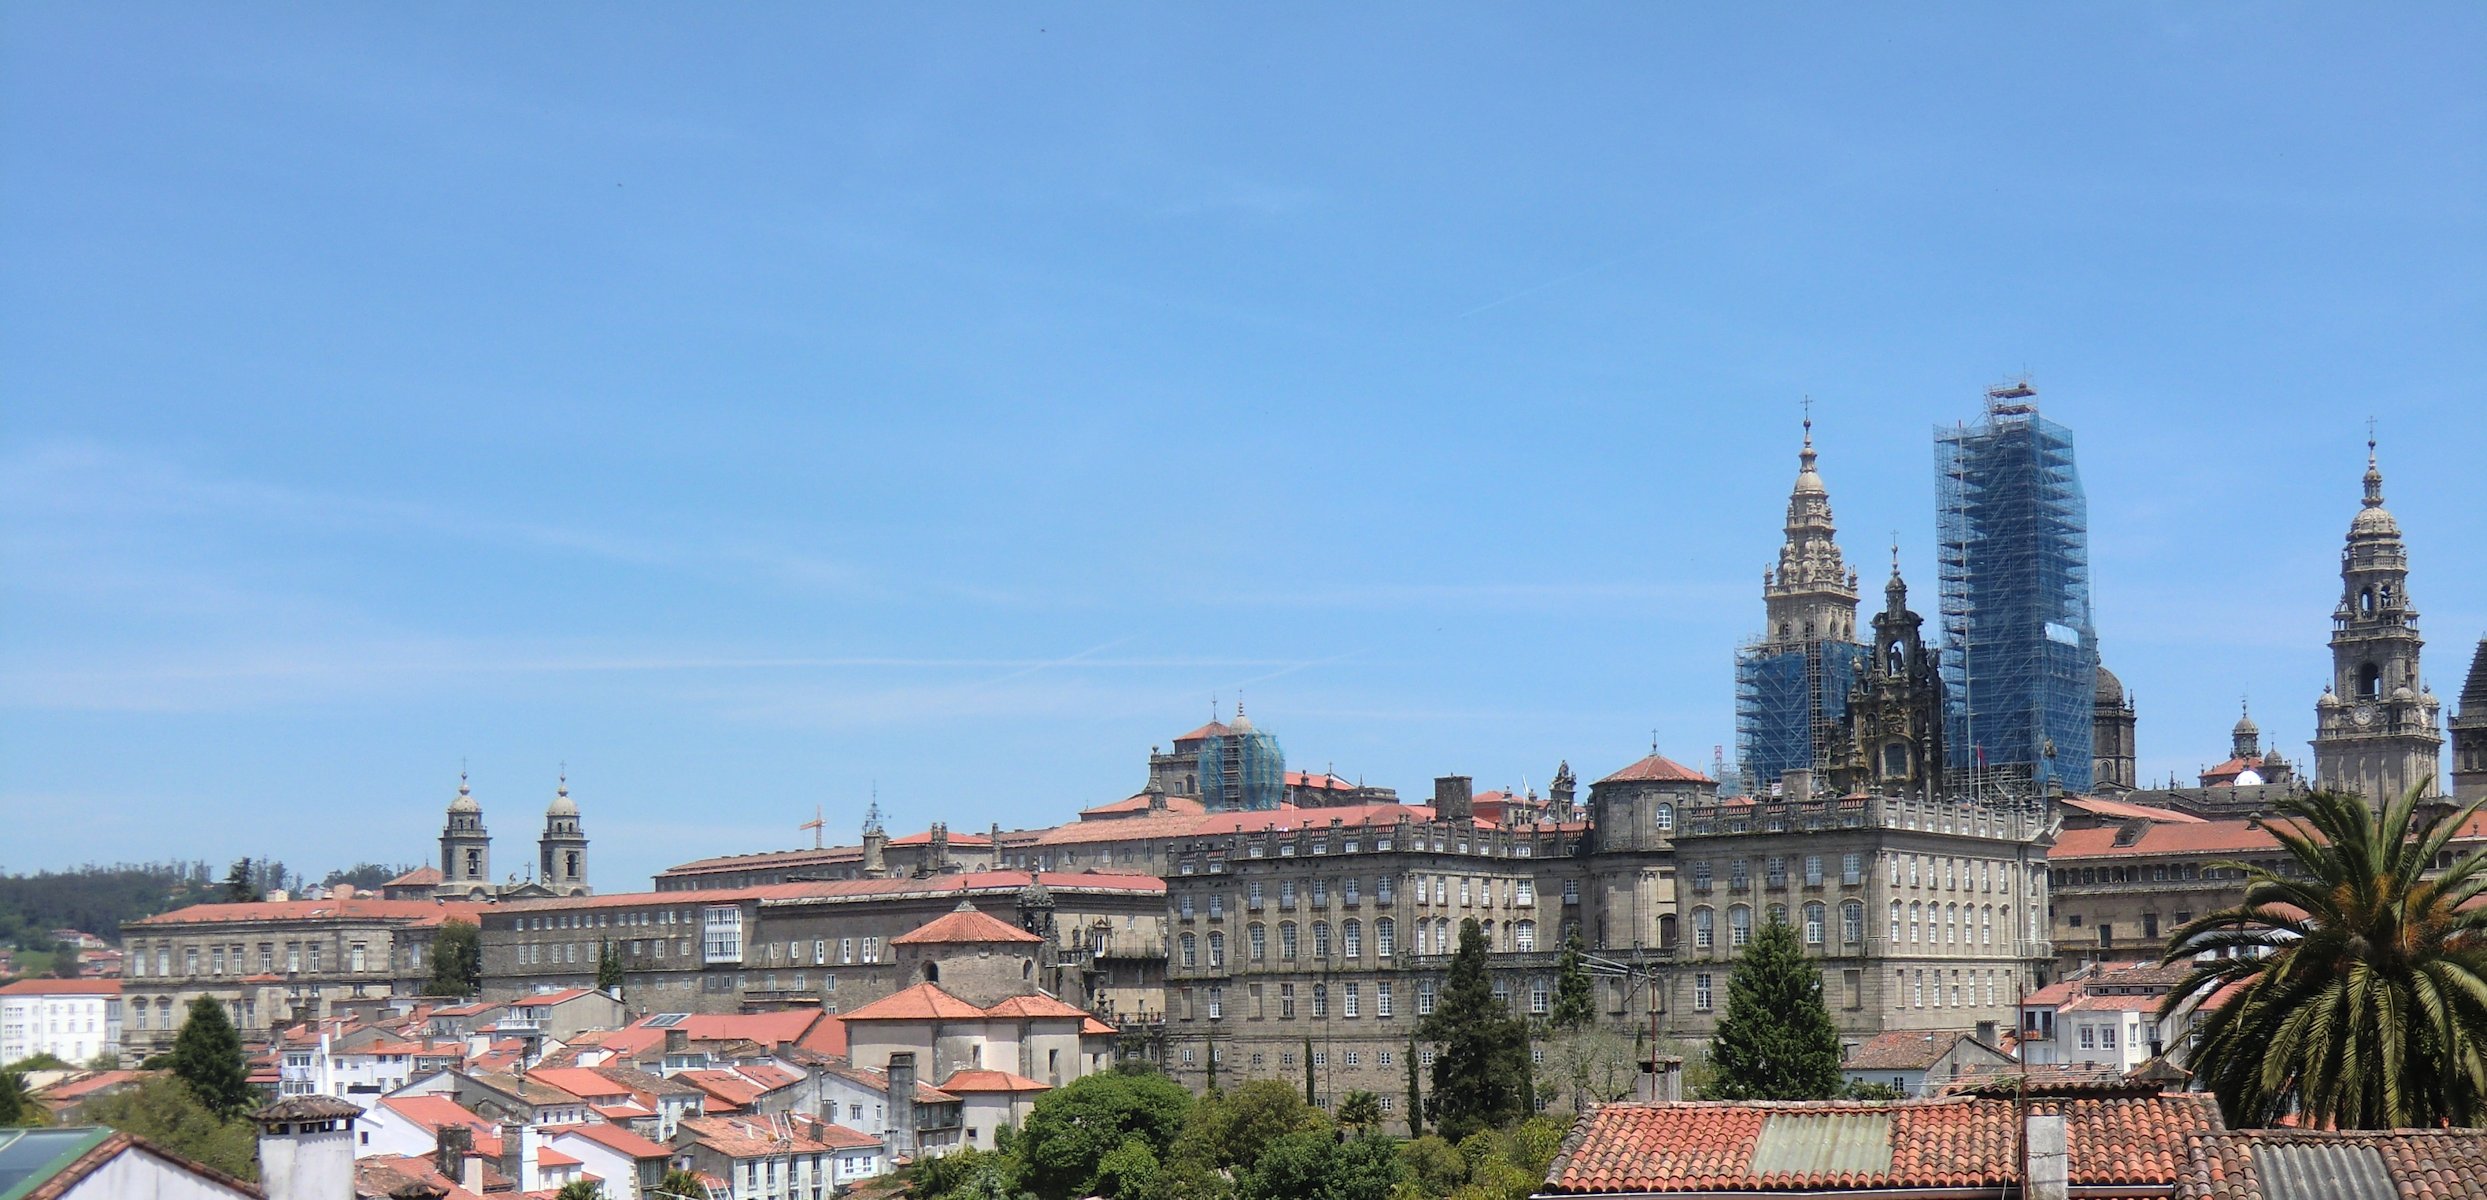 Blick auf die Kathedrale in Santiago de Compostela von Westen mit den Türmen der Franziskanerkirche (links), dem Palast „de Raxoi” für den Klerus aus dem 18. Jahrhundert, heute Rathaus der Stadt, links und dem Hieronymuskolleg aus dem 17. Jahrhundert, heute Universität (rechts)